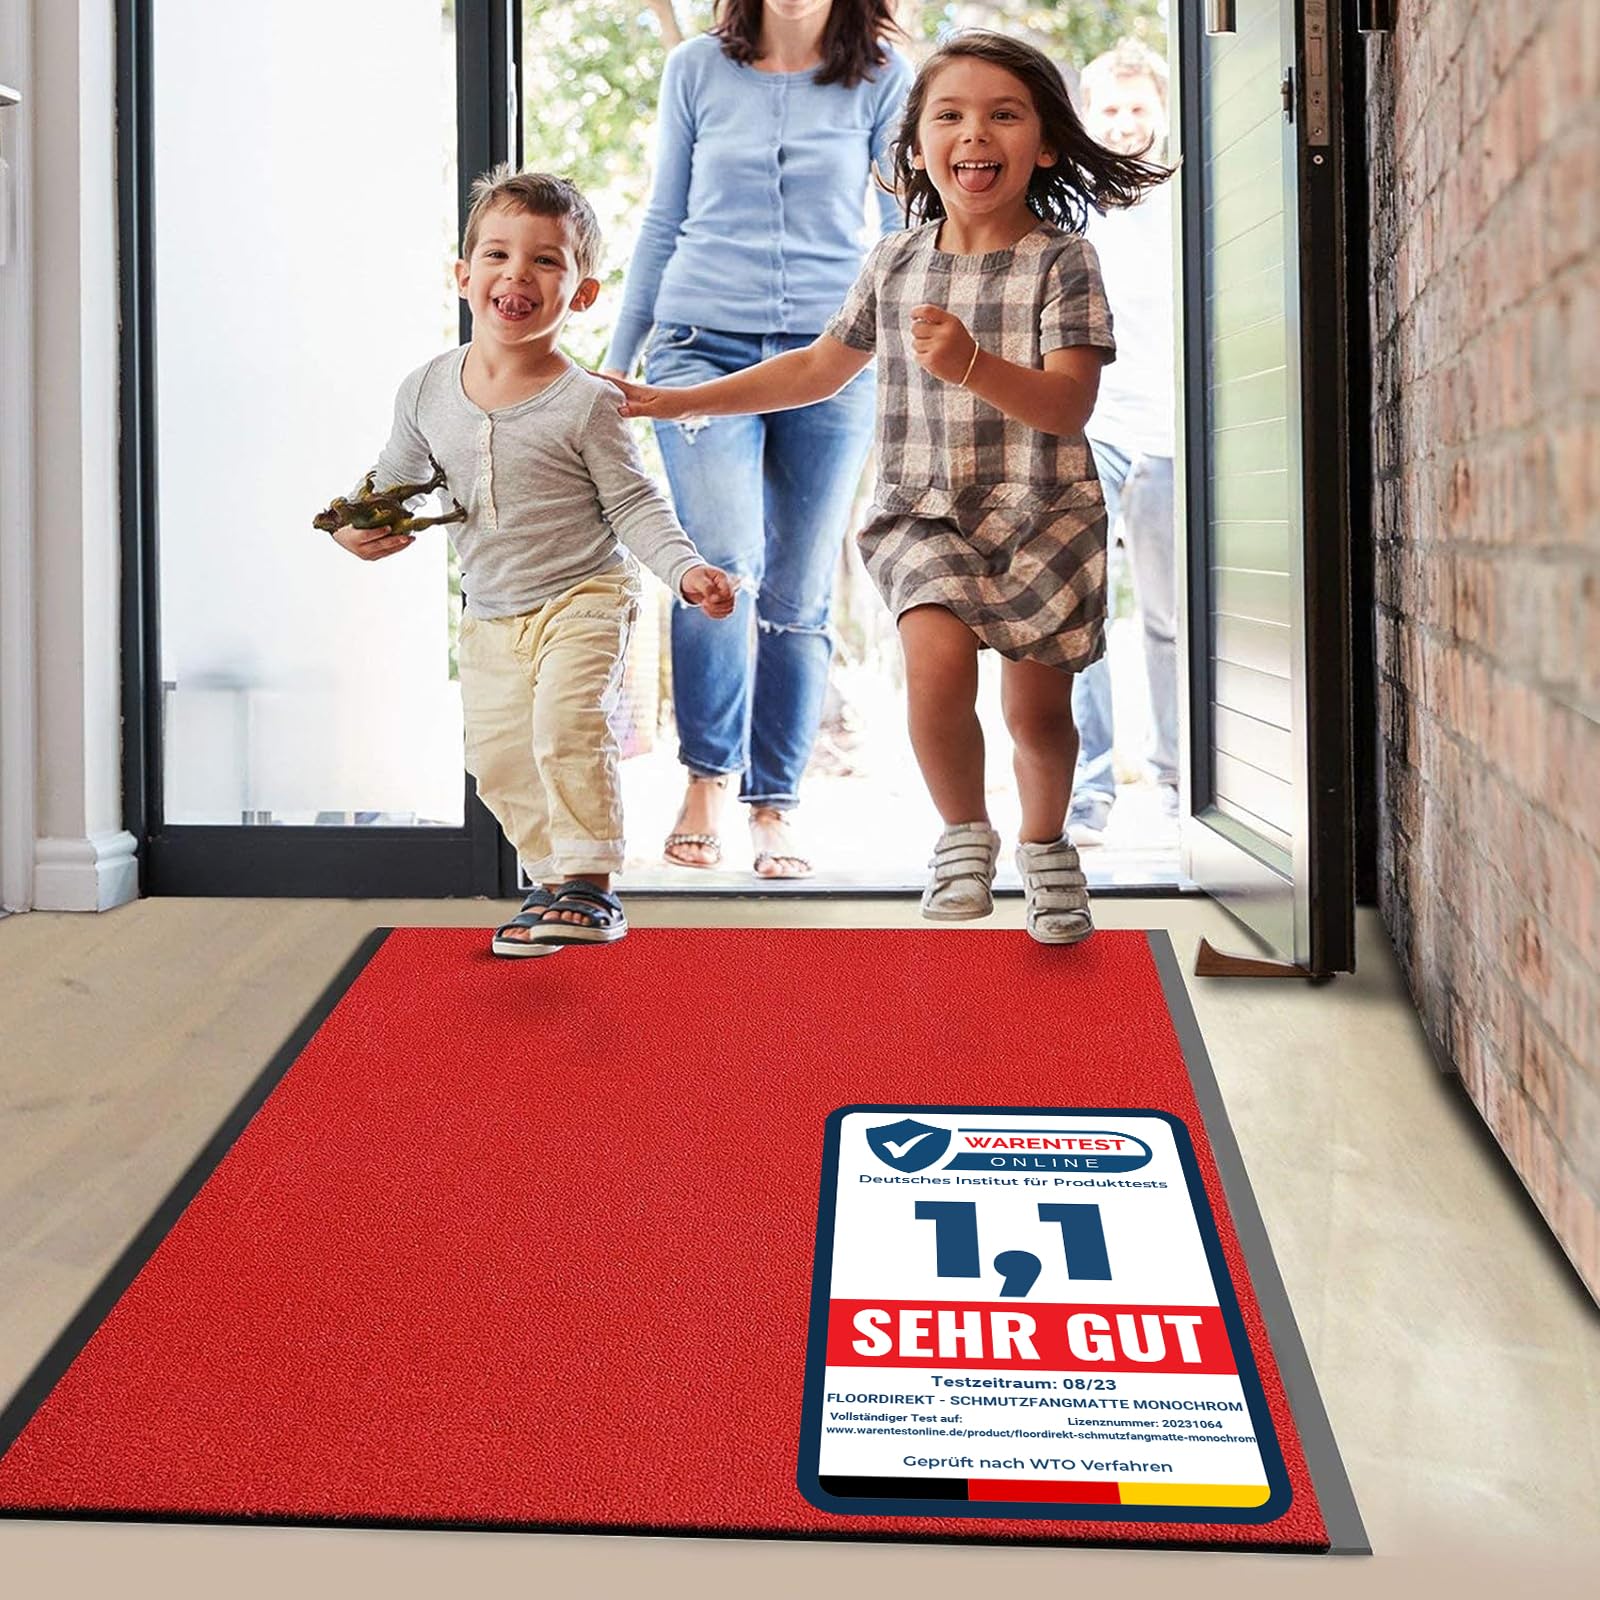 Floordirekt Schmutzfangmatte Monochrom | viele Größen, viele Farben | Länge auf Maß | rutschfeste waschbare Fußmatte (Rot, 200 x 150 cm)